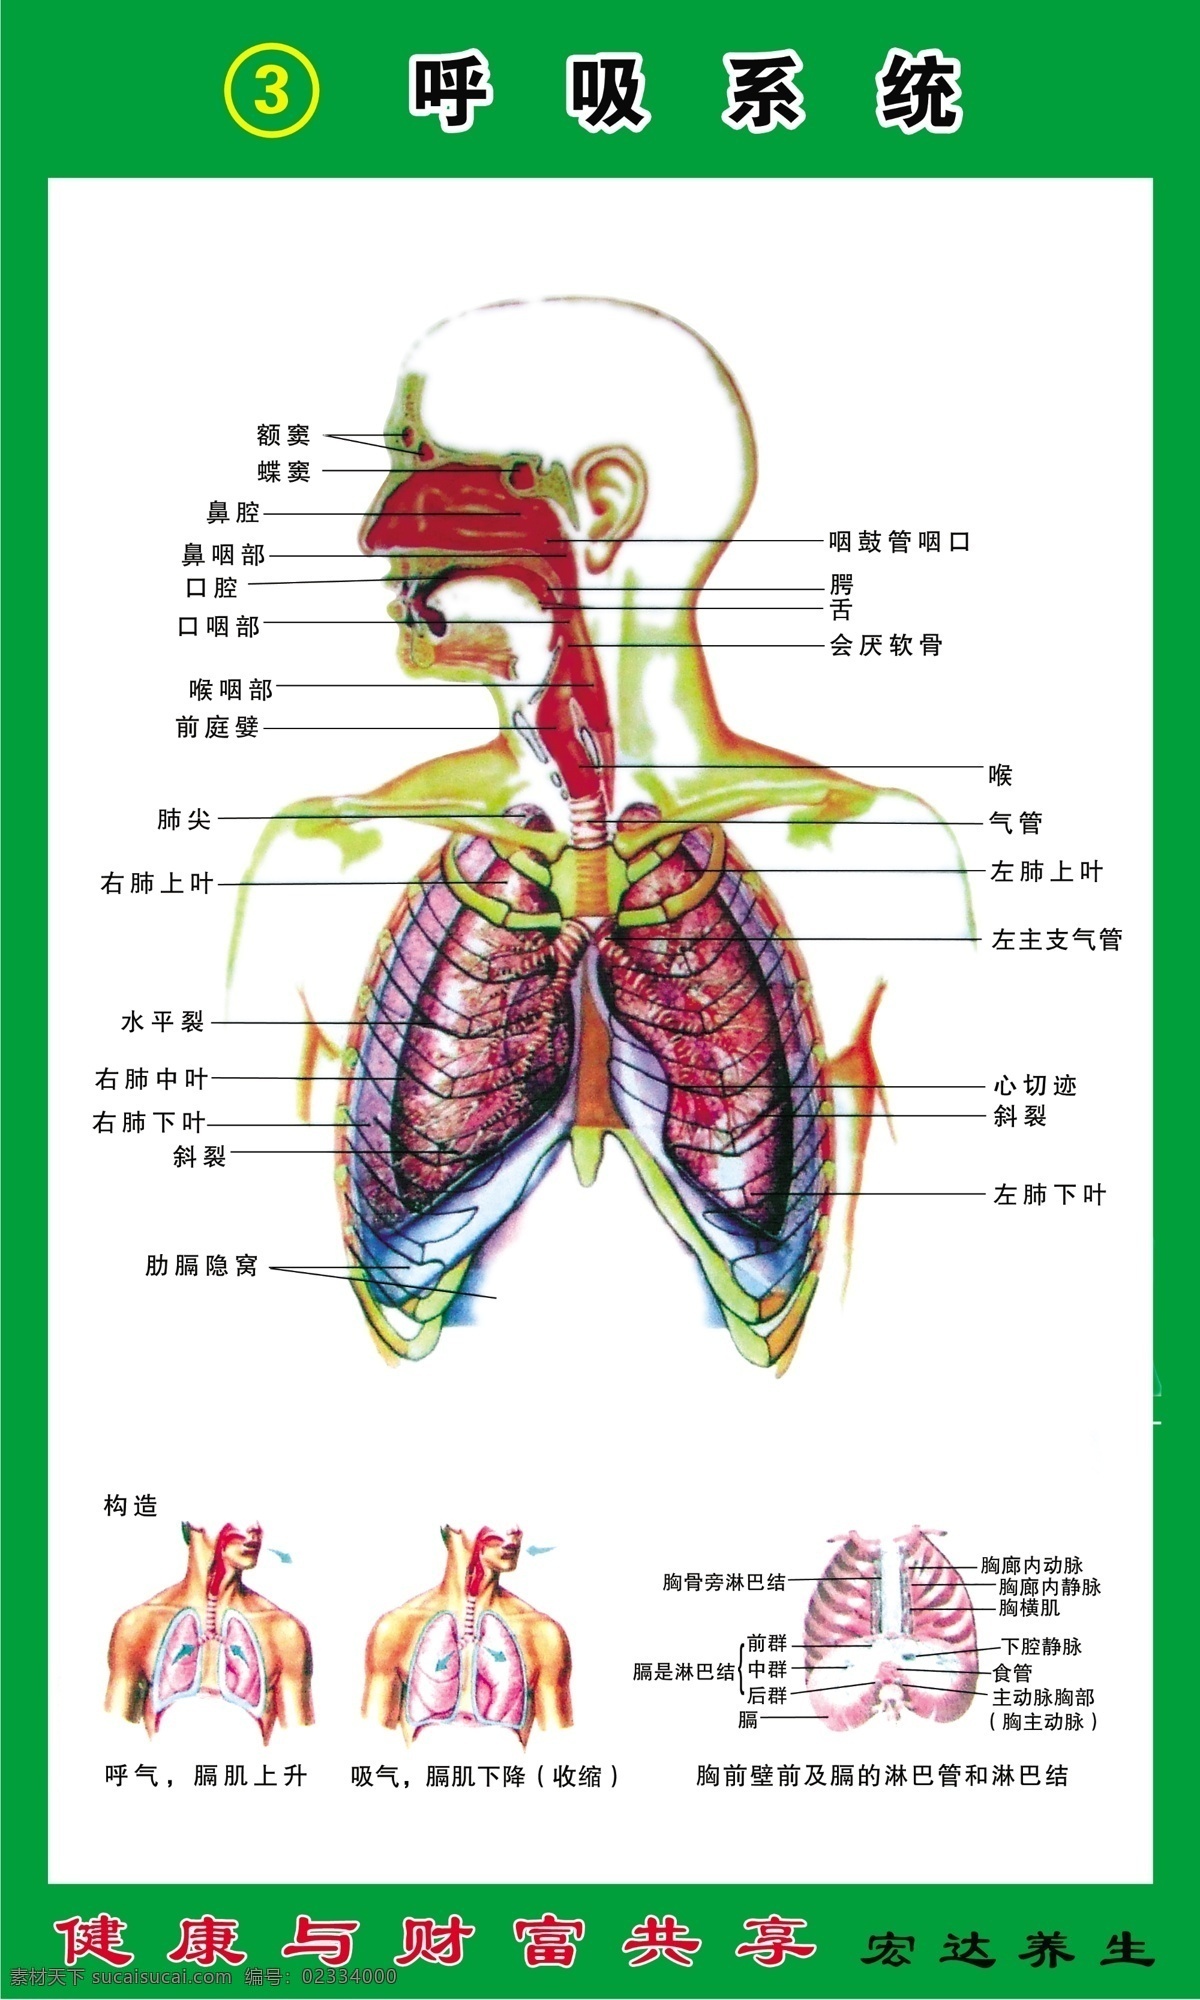 呼吸系统 构造 图 养生 健康 财富 共享 胸前 壁 前 膈 淋巴管 淋巴结 广告设计模板 源文件